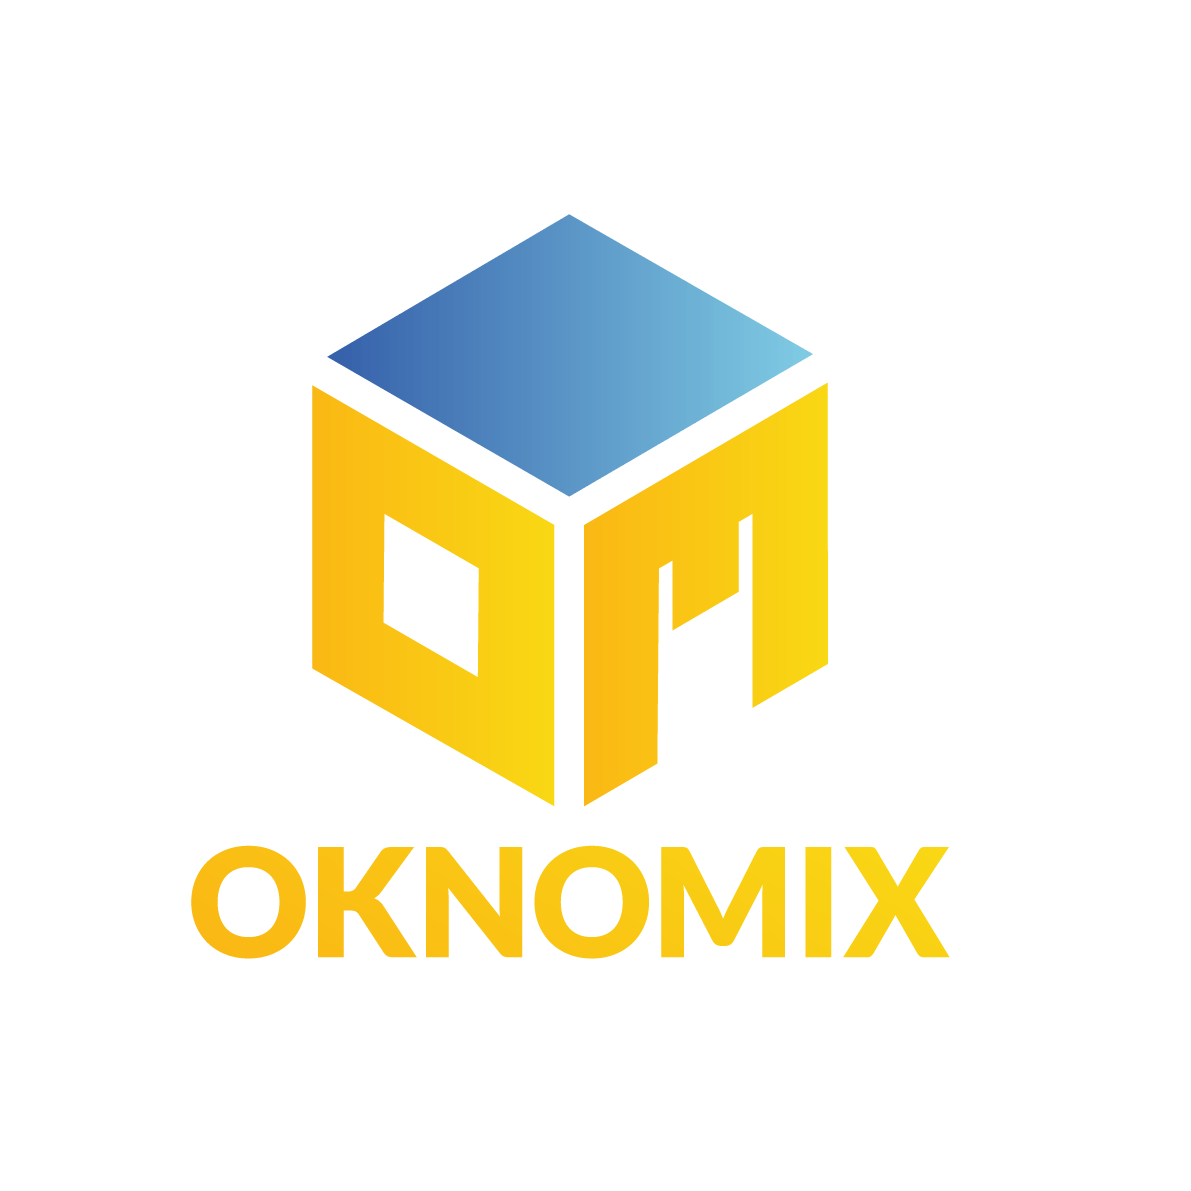 Oknomix